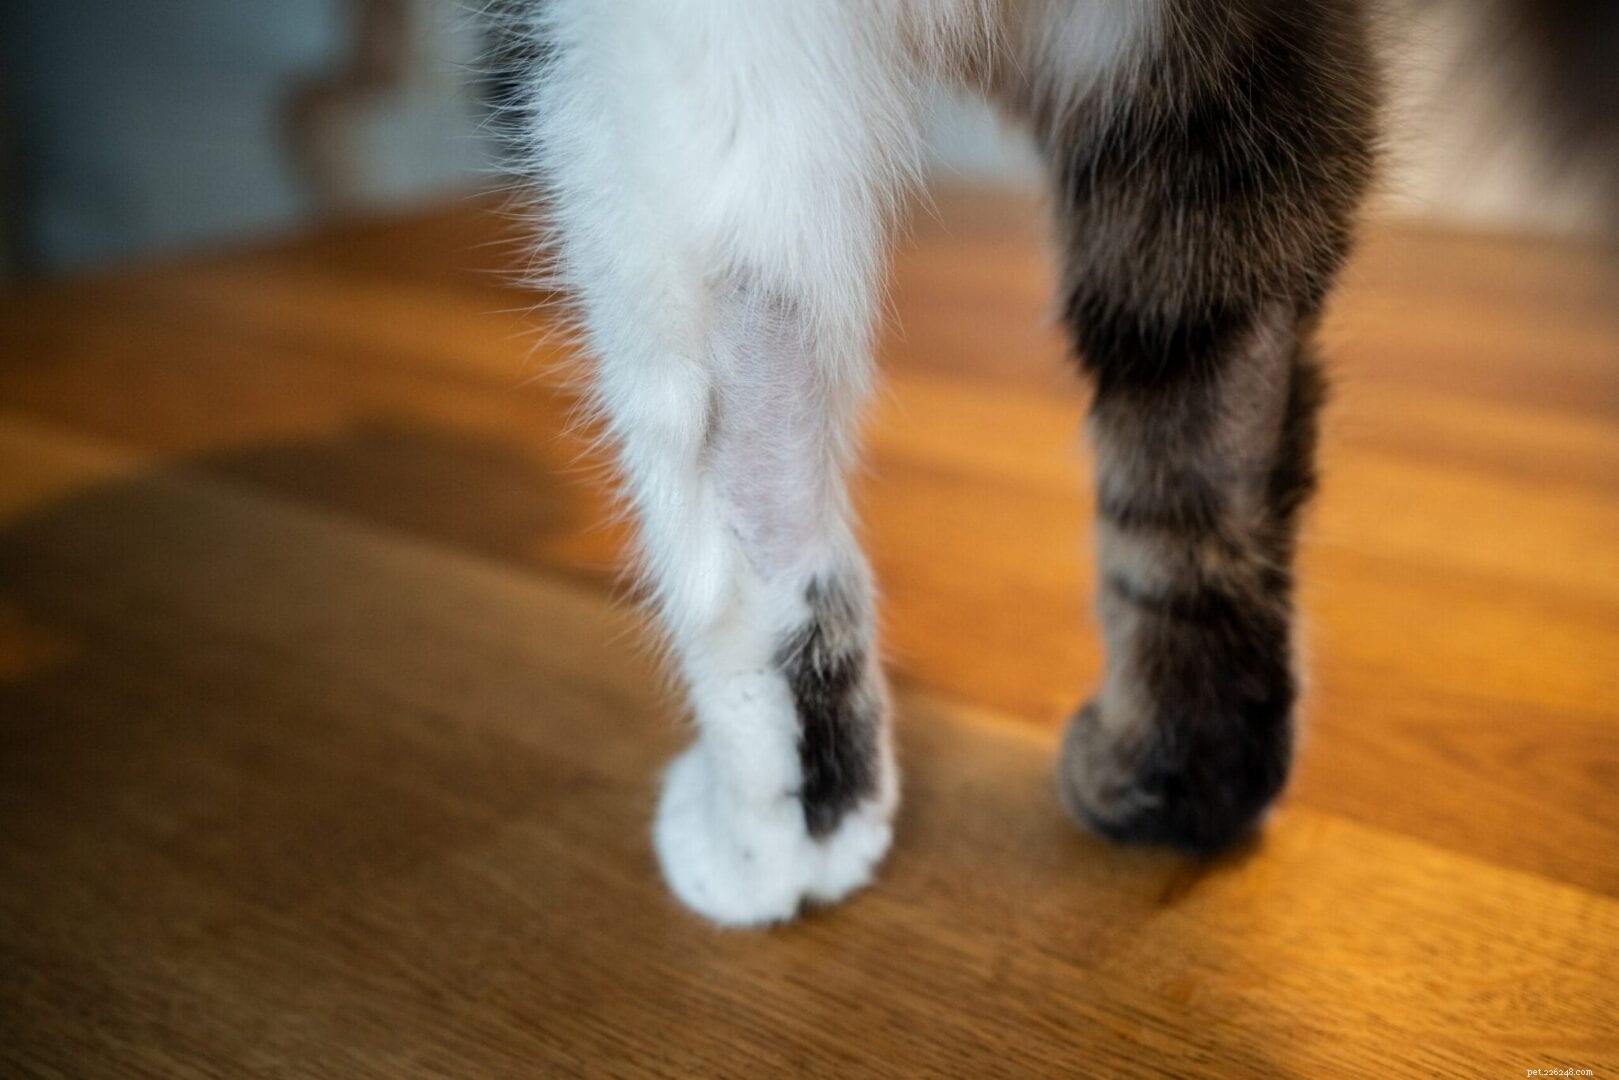 Sekání kožešin:Proč si kočky vytrhávají chlupy